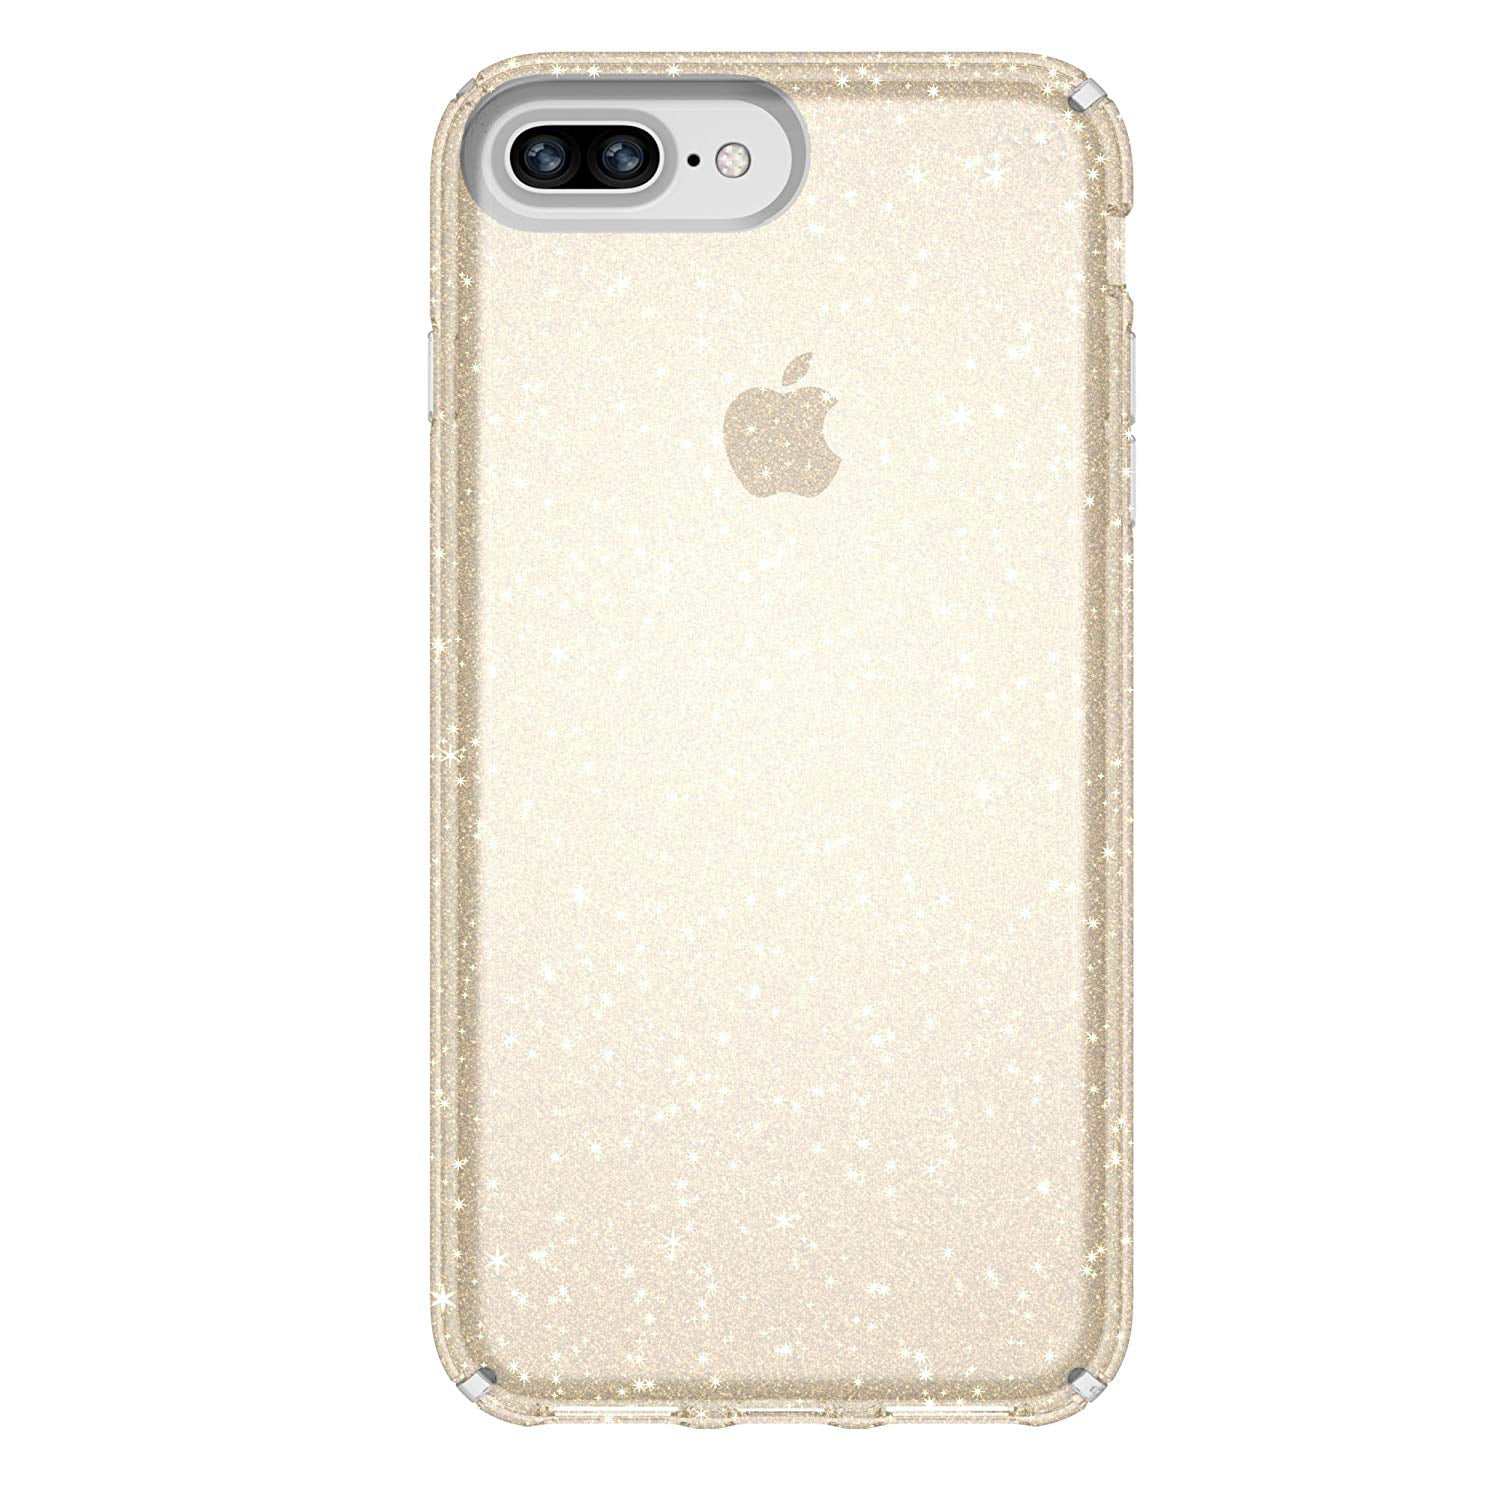 Speck Presidio Clear Plus Glitter Case iPhone 8 Plus Clear Gold Glitter